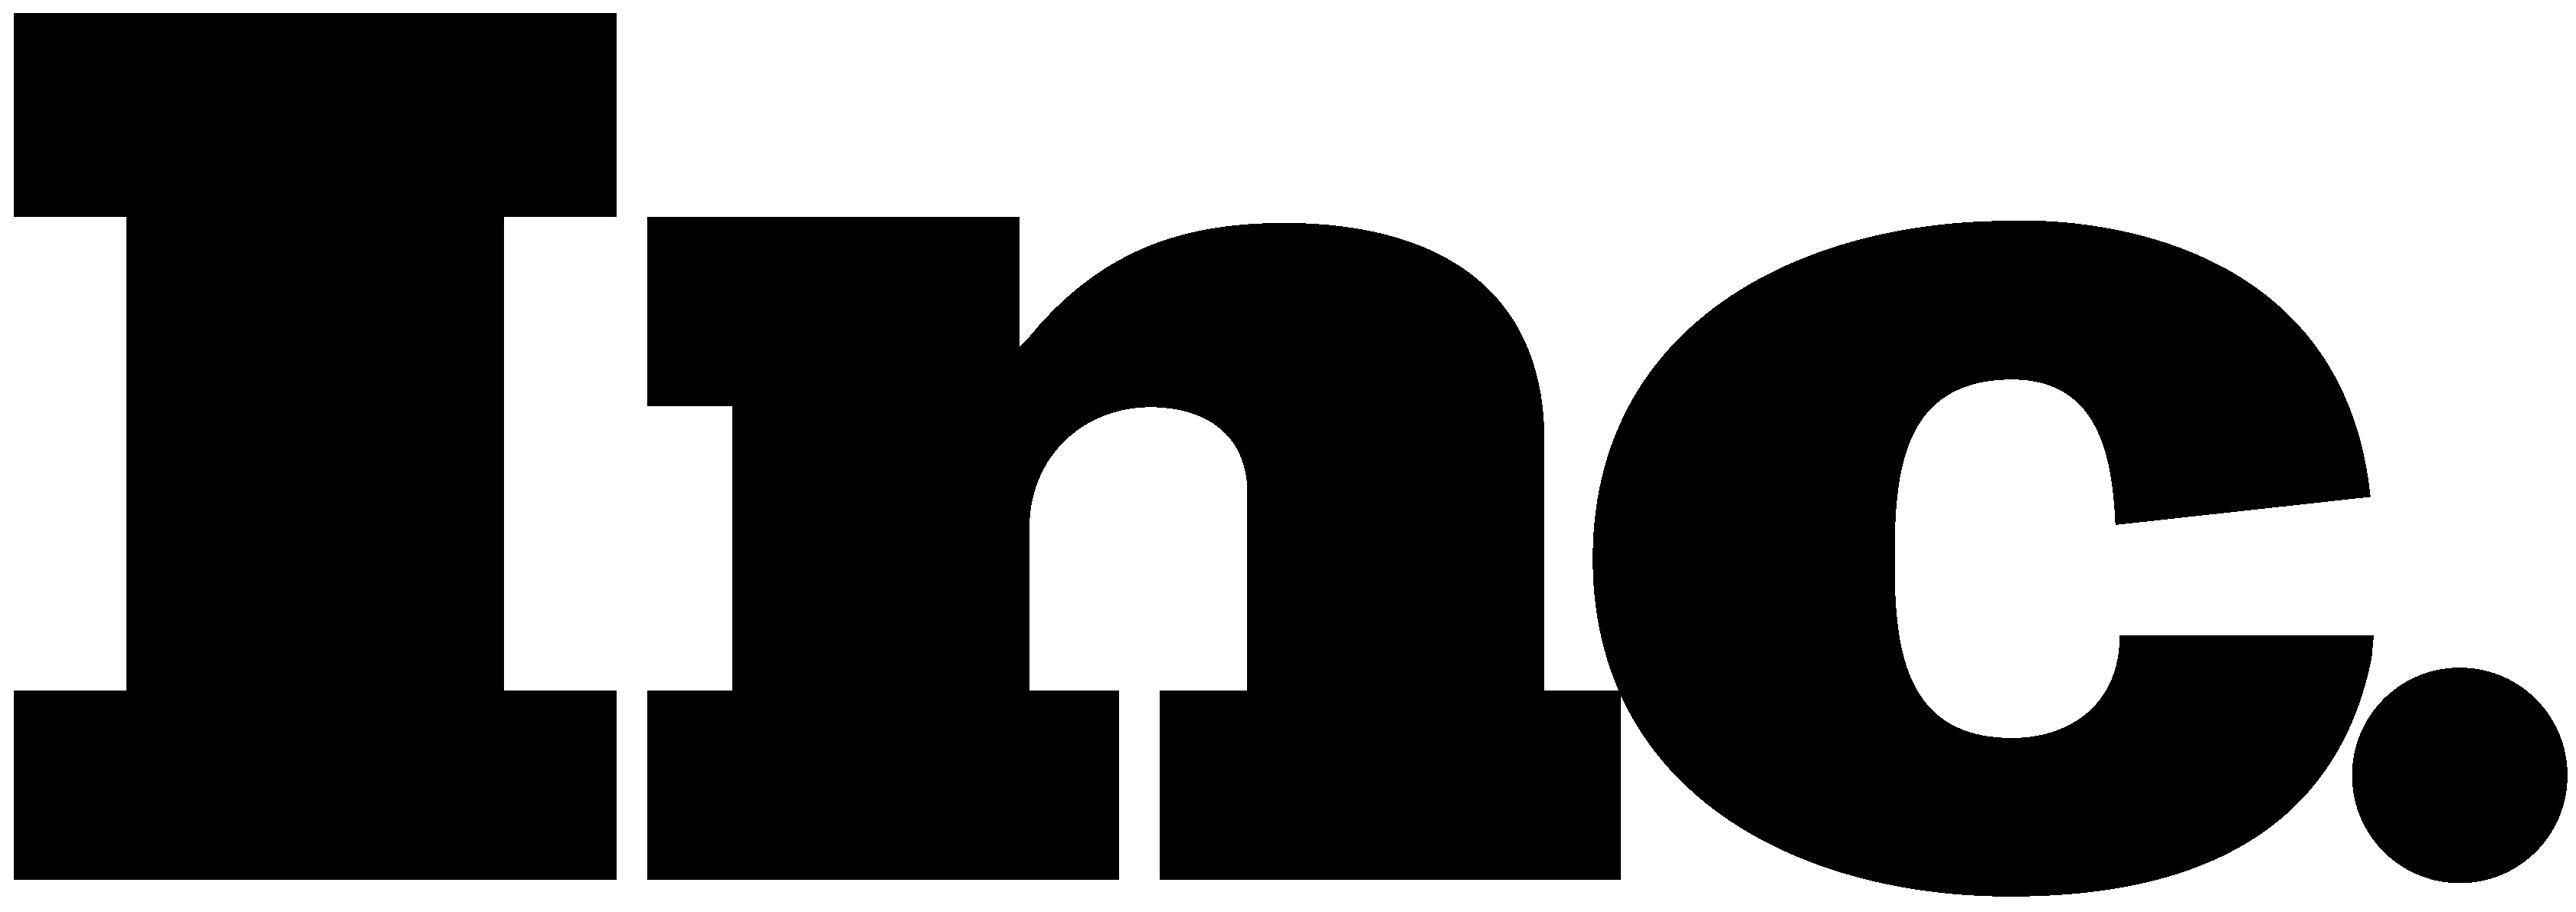 Inc. Magazine Logo - Inc. Logo [Magazine.com] Vector Free Download